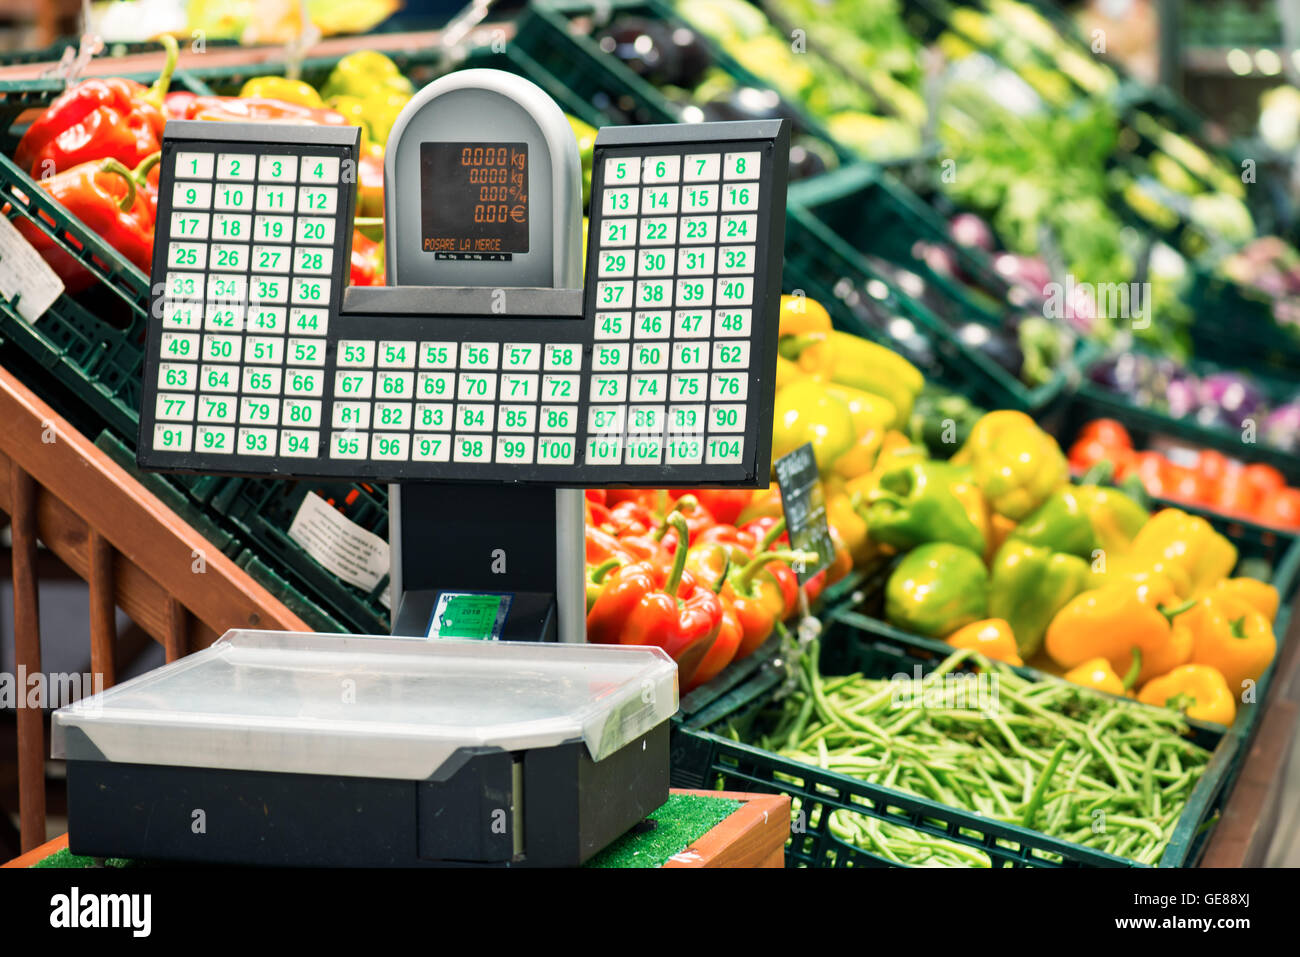 Waage für Obst und Gemüse im Supermarkt Stockfotografie - Alamy